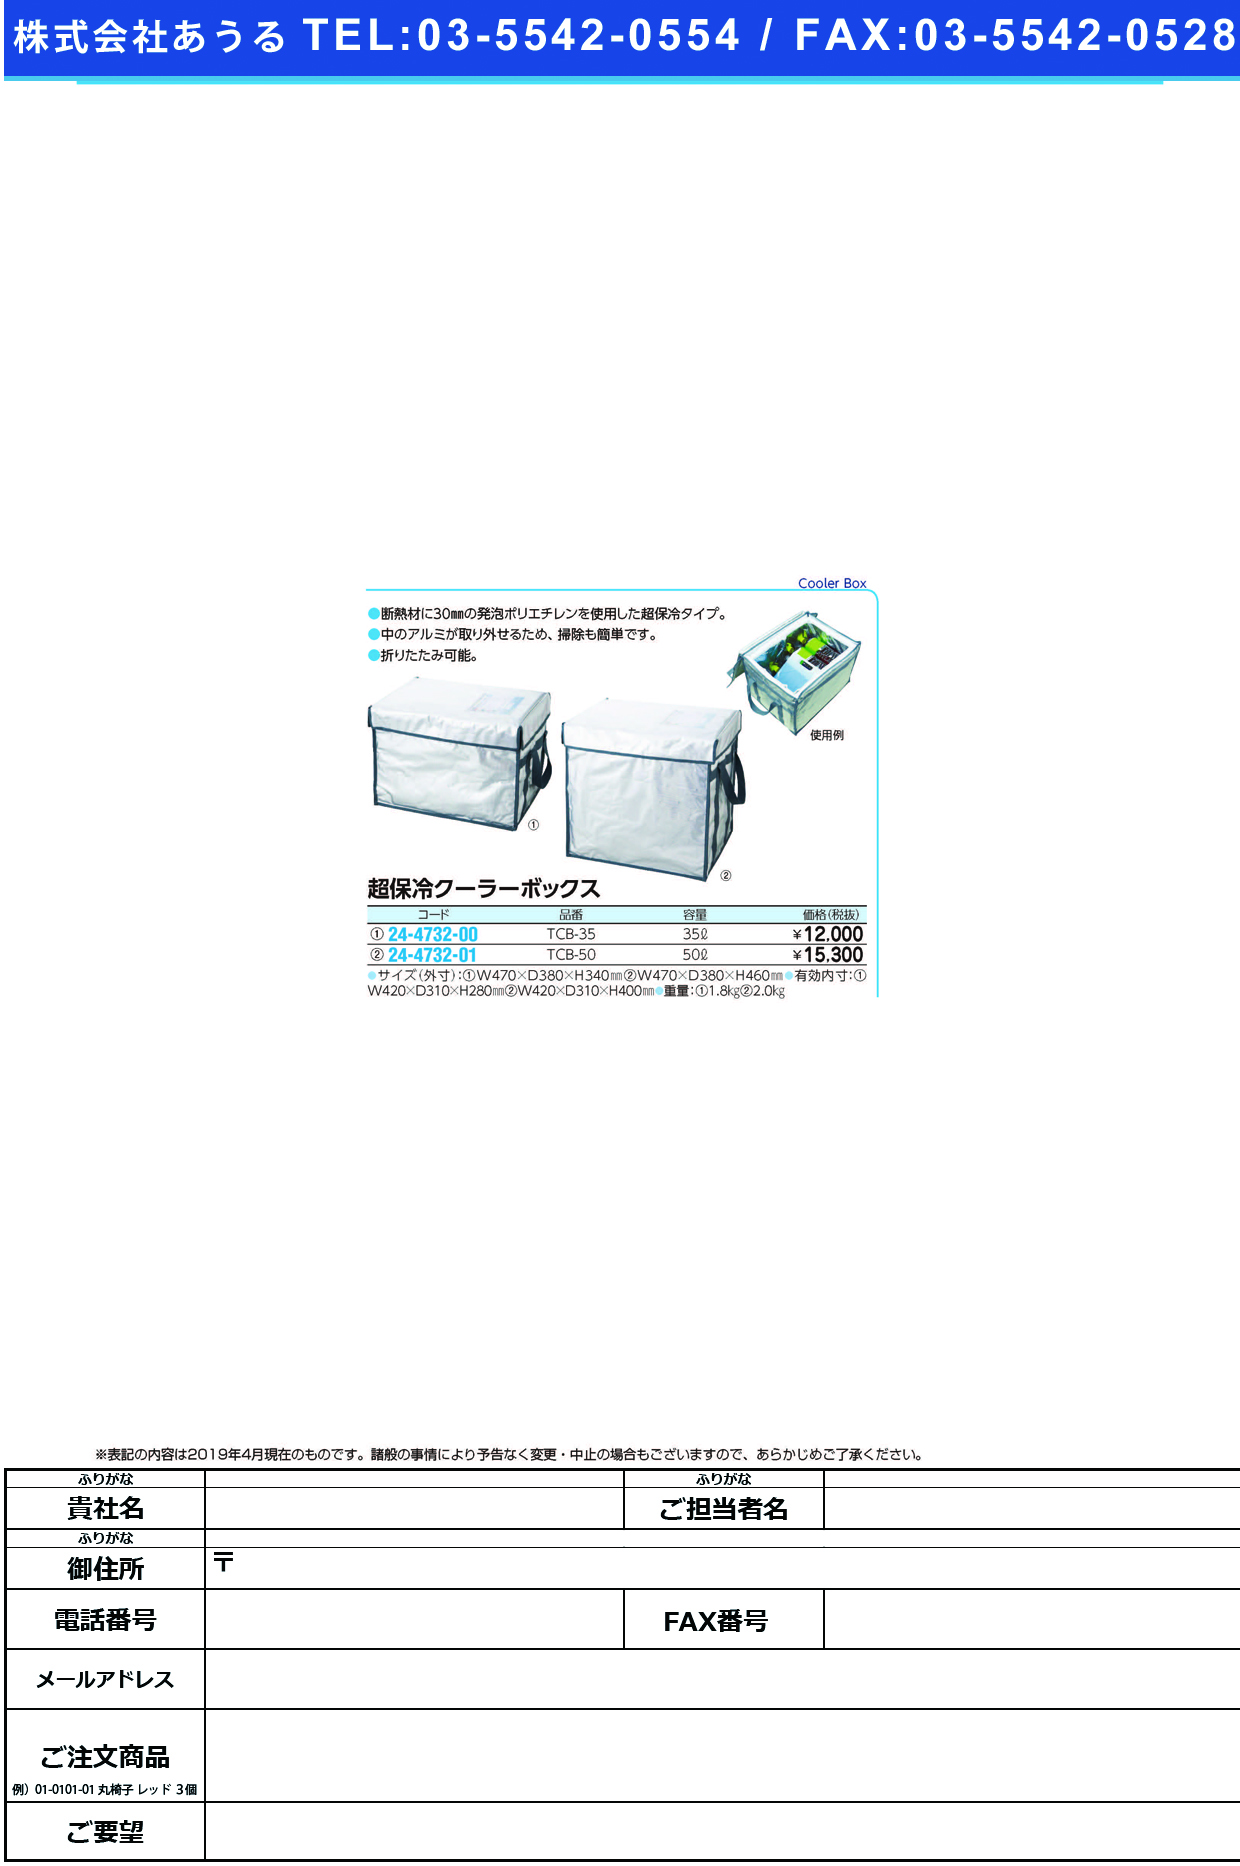 (24-4732-01)超保冷クーラーボックス TCB-50(50L) ﾁｮｳﾎﾚｲｸｰﾗｰﾎﾞｯｸｽ【1個単位】【2019年カタログ商品】